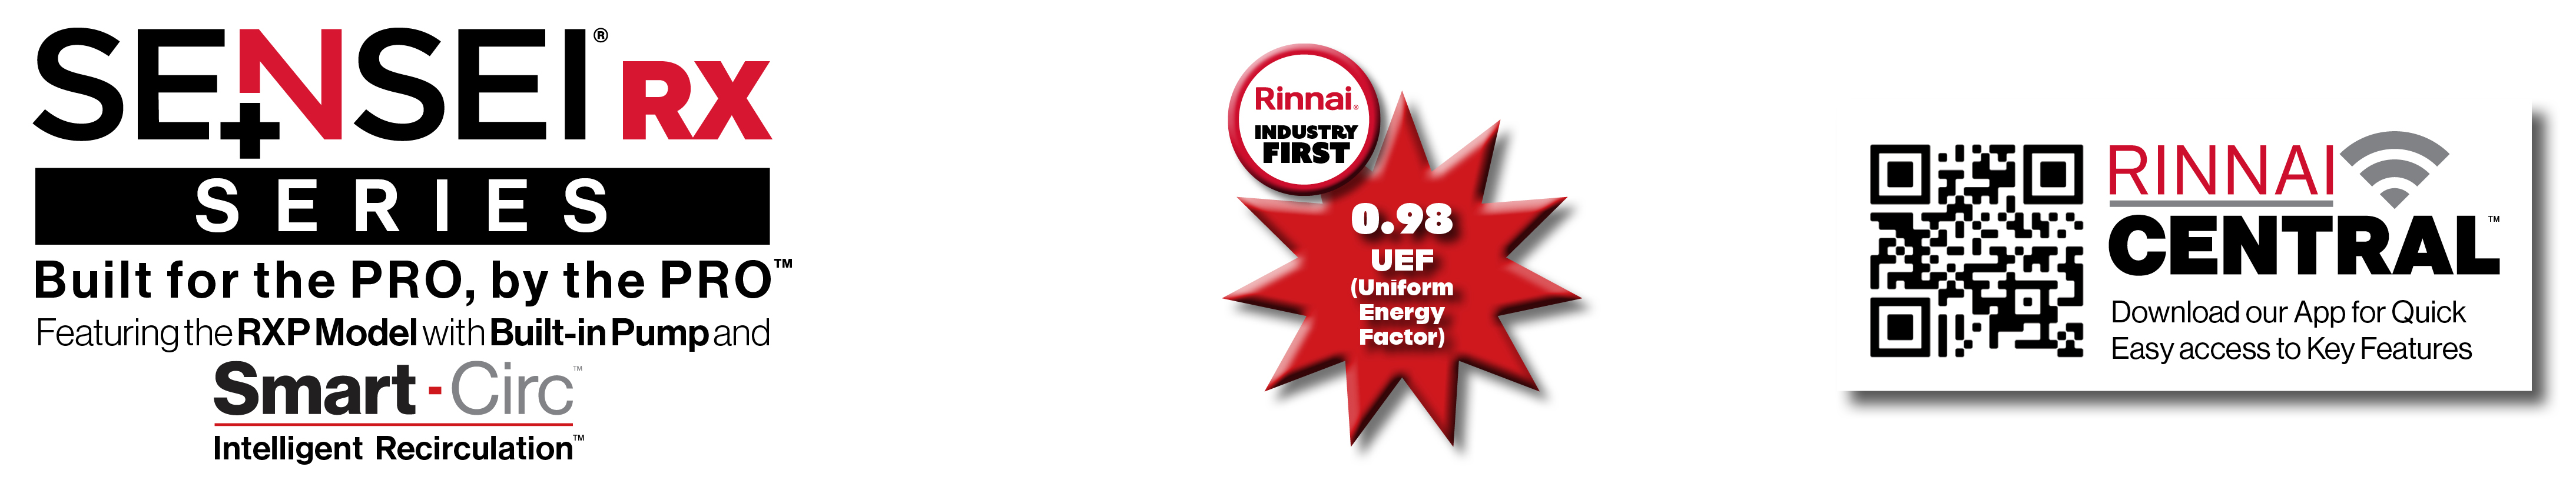 Modèle SENSEI RX 0,98 UEF (Facteur énergétique uniforme), application Central et image de verrouillage du code QR